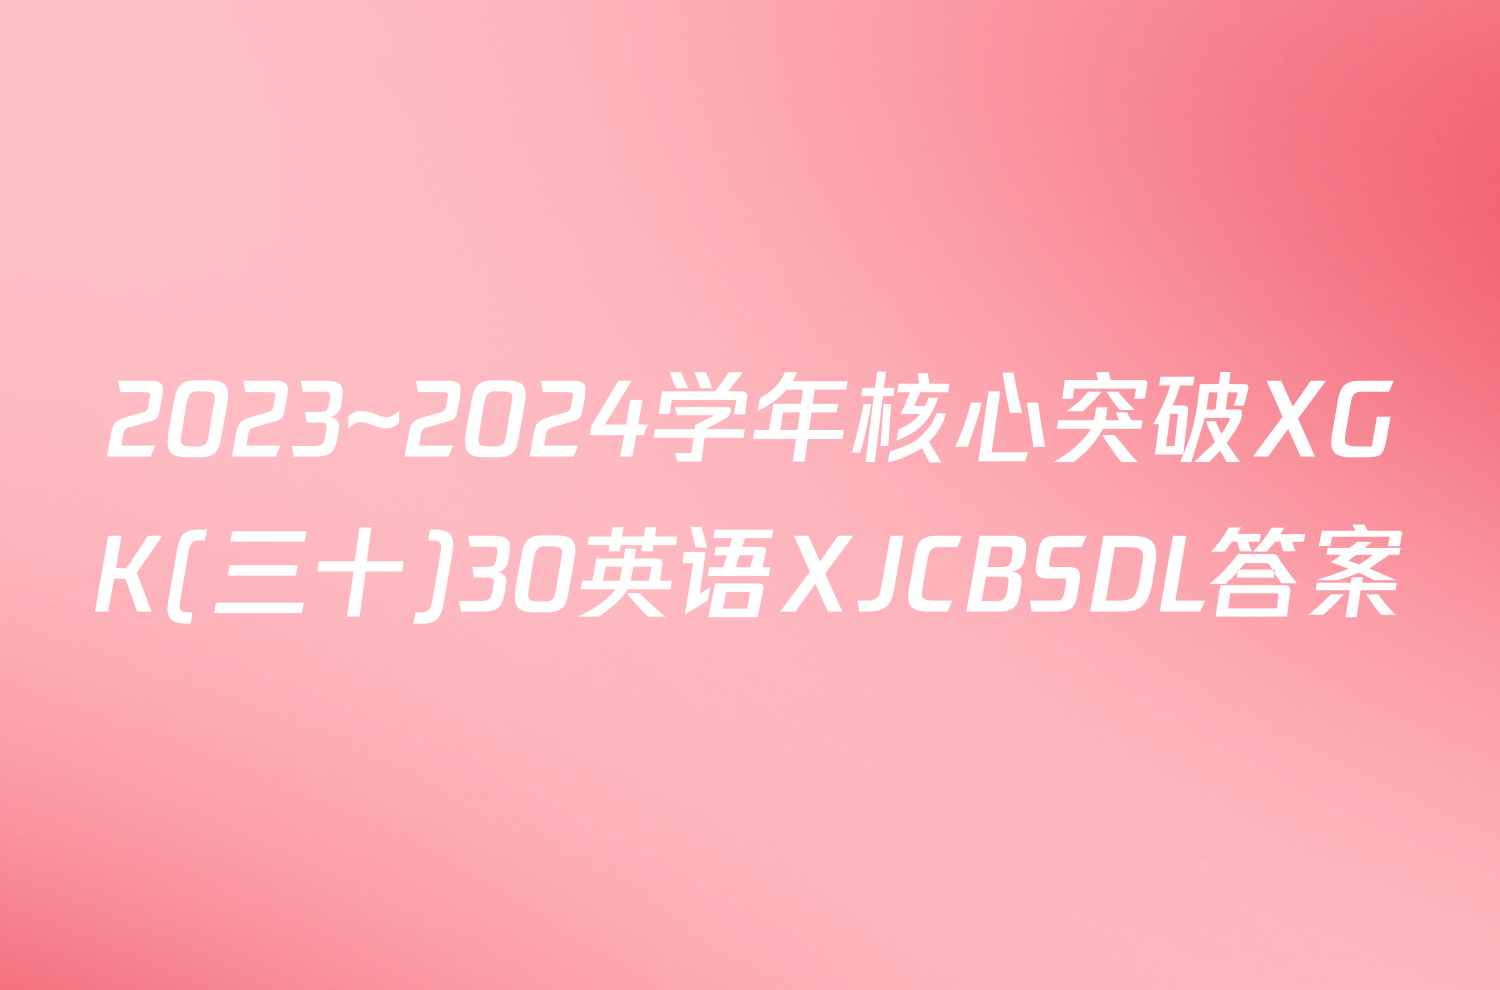 2023~2024学年核心突破XGK(三十)30英语XJCBSDL答案